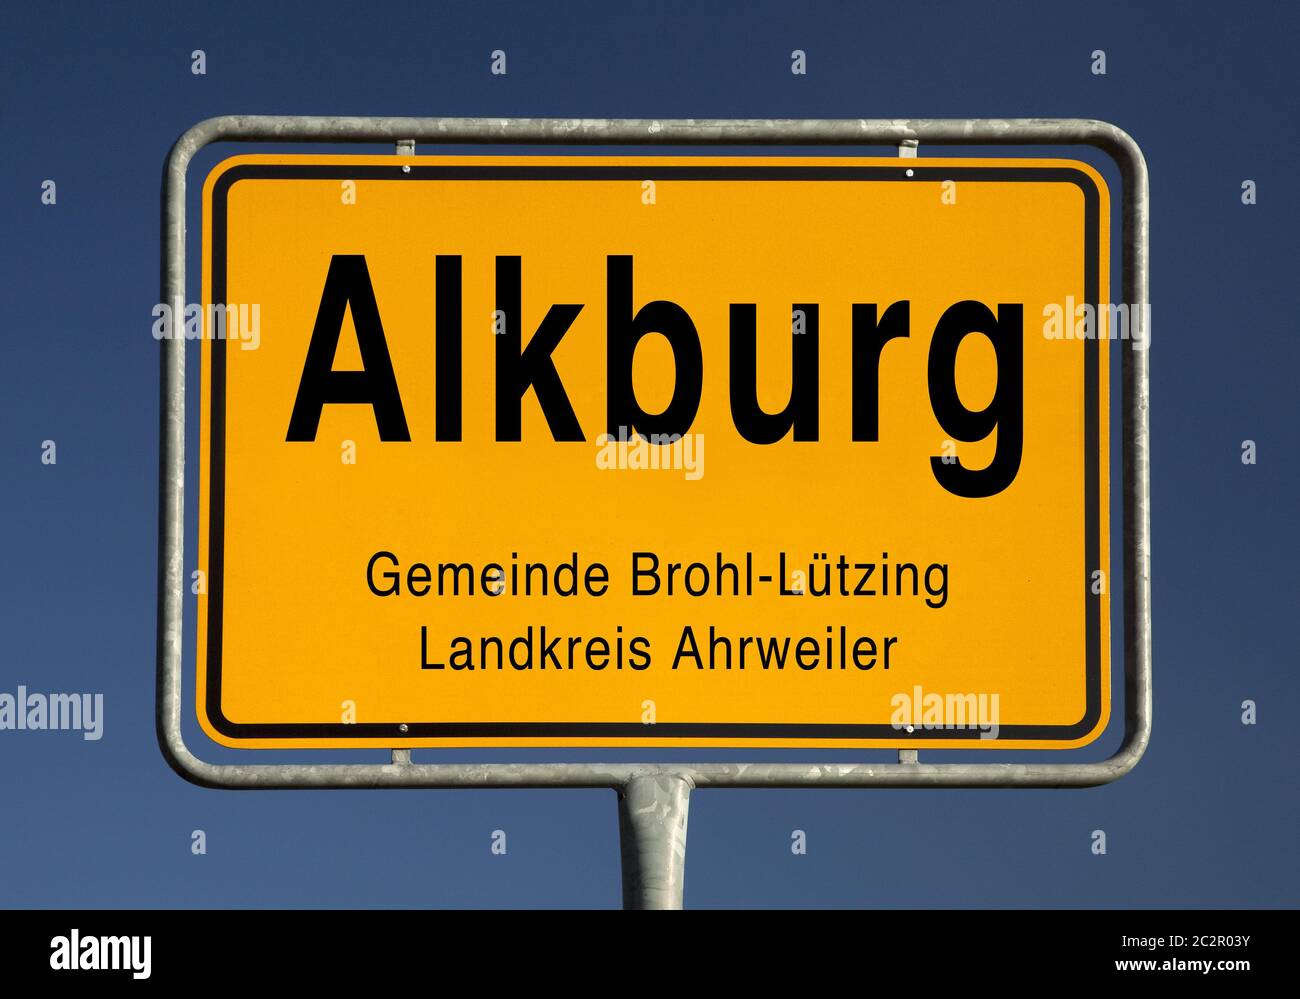 Ville signe d'Alkburg dans la communauté locale Brohl-Luetzing, Rhénanie-Palatinat, Allemagne, Europe Banque D'Images